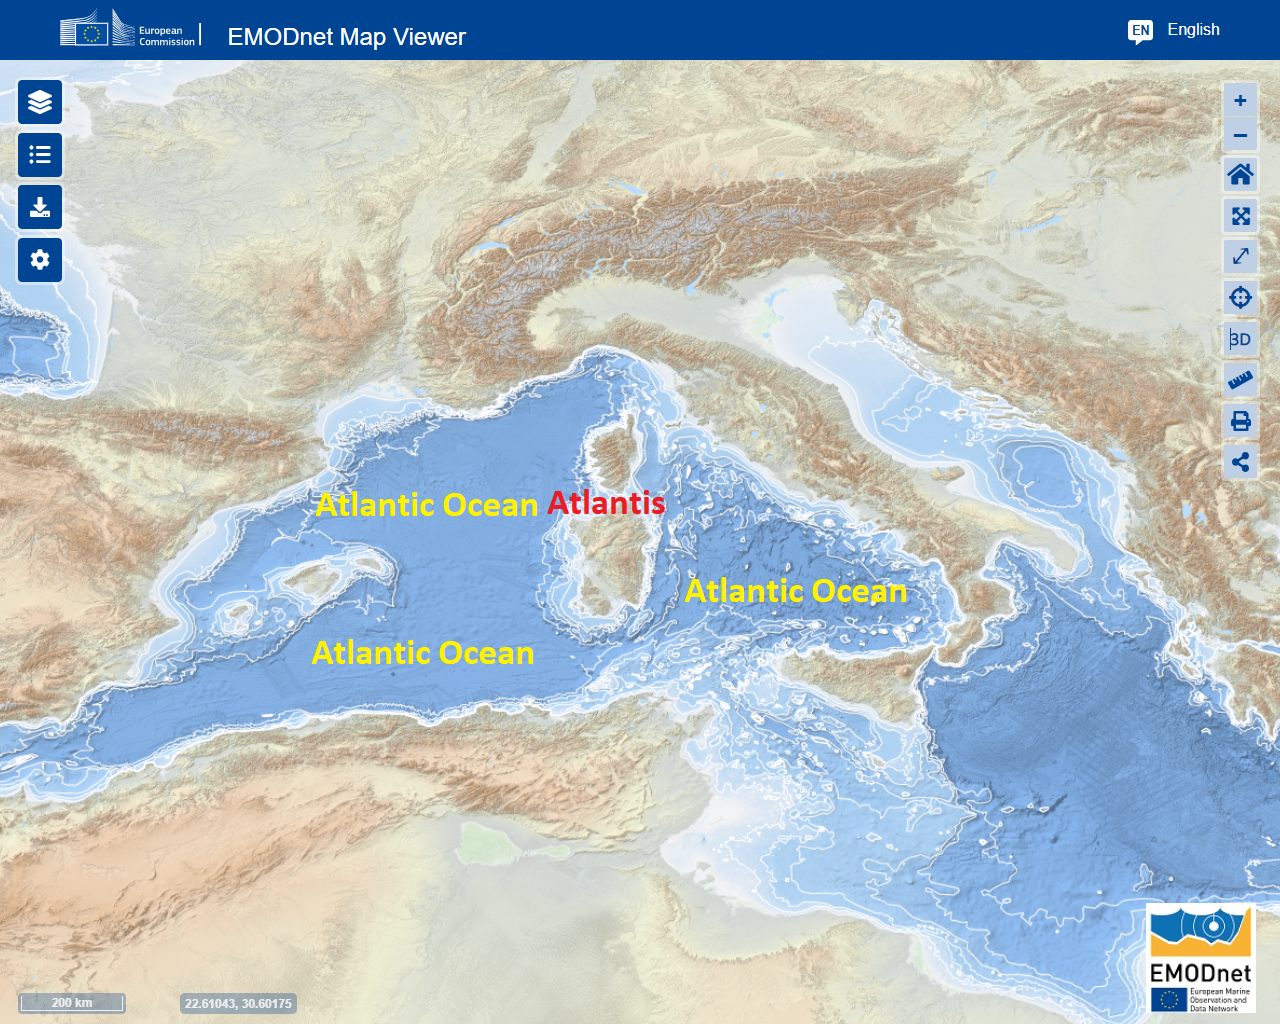 Atlantis im mesolithischen Atlantischen Ozean wird heute Mittelmeer genannt